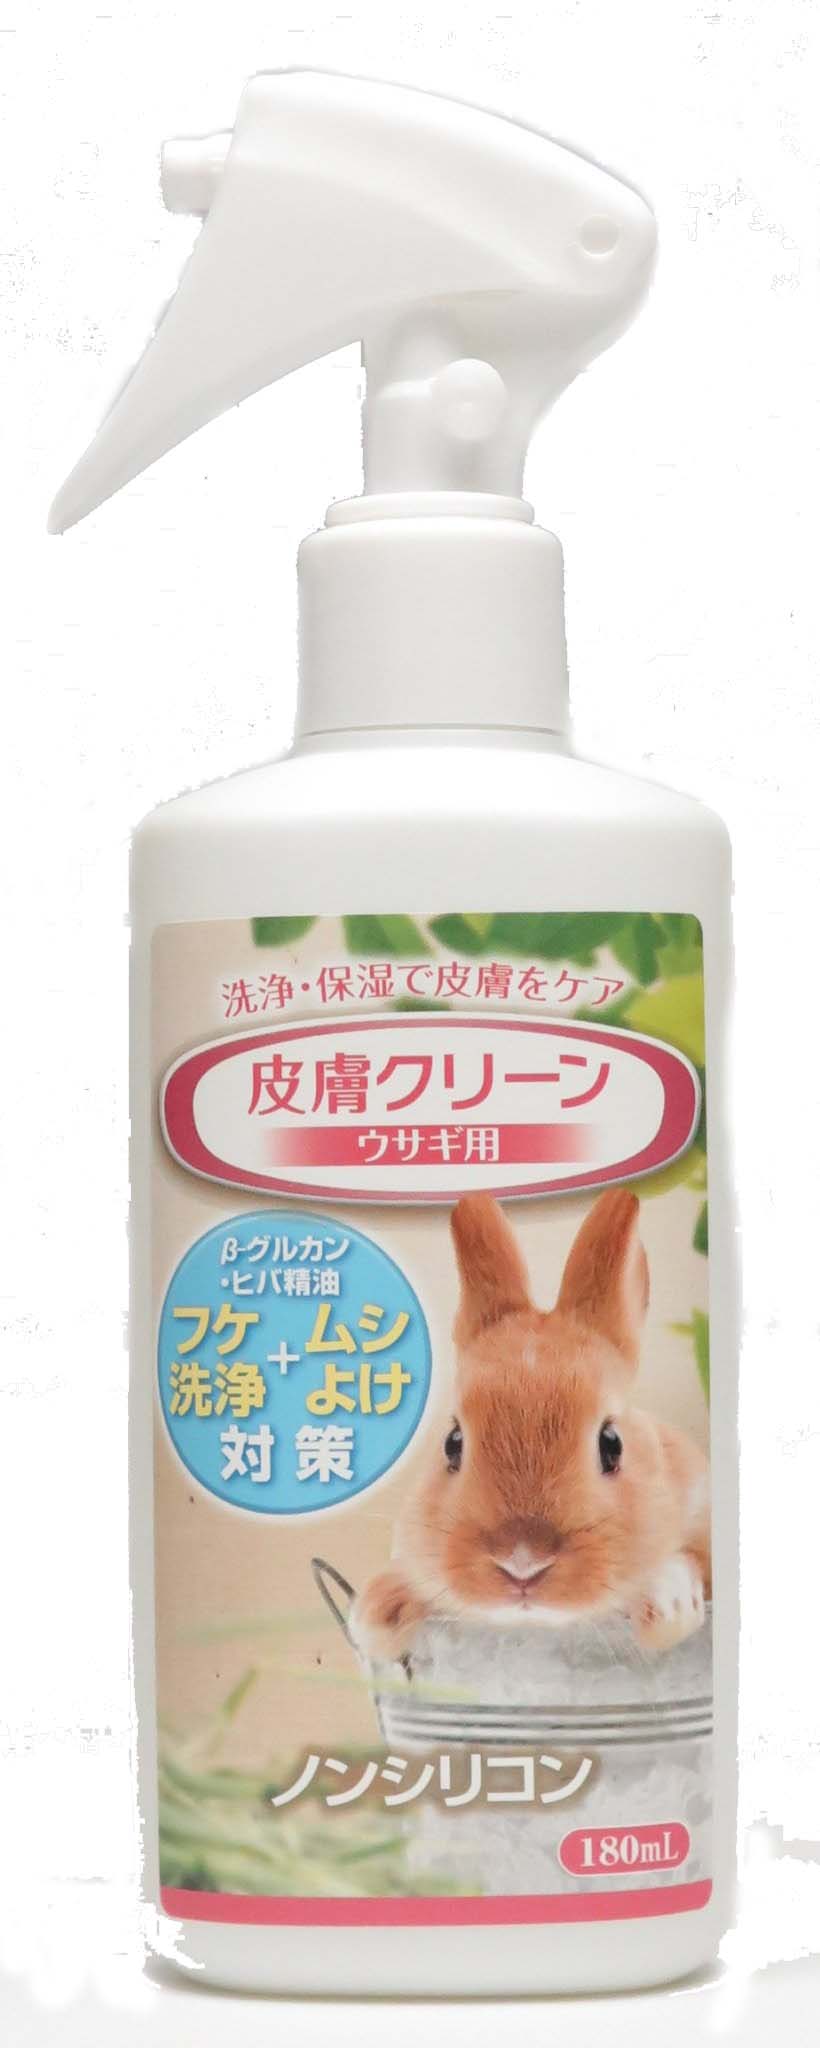 洗浄・保湿で皮膚をケア βーグルカン＋天然ヒバ成分でフケ・ムシよけ対策 ウサギの皮膚はデリケートで、フケが出やすく、そのまま放置すると皮膚トラブルの原因となります。 ウサギは私たちと異なり毎日の入浴とシャンプーができませんので、本品による定期的な皮膚のお手入れをお勧めします。 ●ウサギの皮膚を清浄化し、皮膚にうるおいを与えます。 ●黒酵母由来のβグルカンが皮膚を保湿し、さらに皮膚の免疫バランスを正常に維持させます。 ●天然の青森産ヒバによりウサギにとって不快な虫をよせつけません。